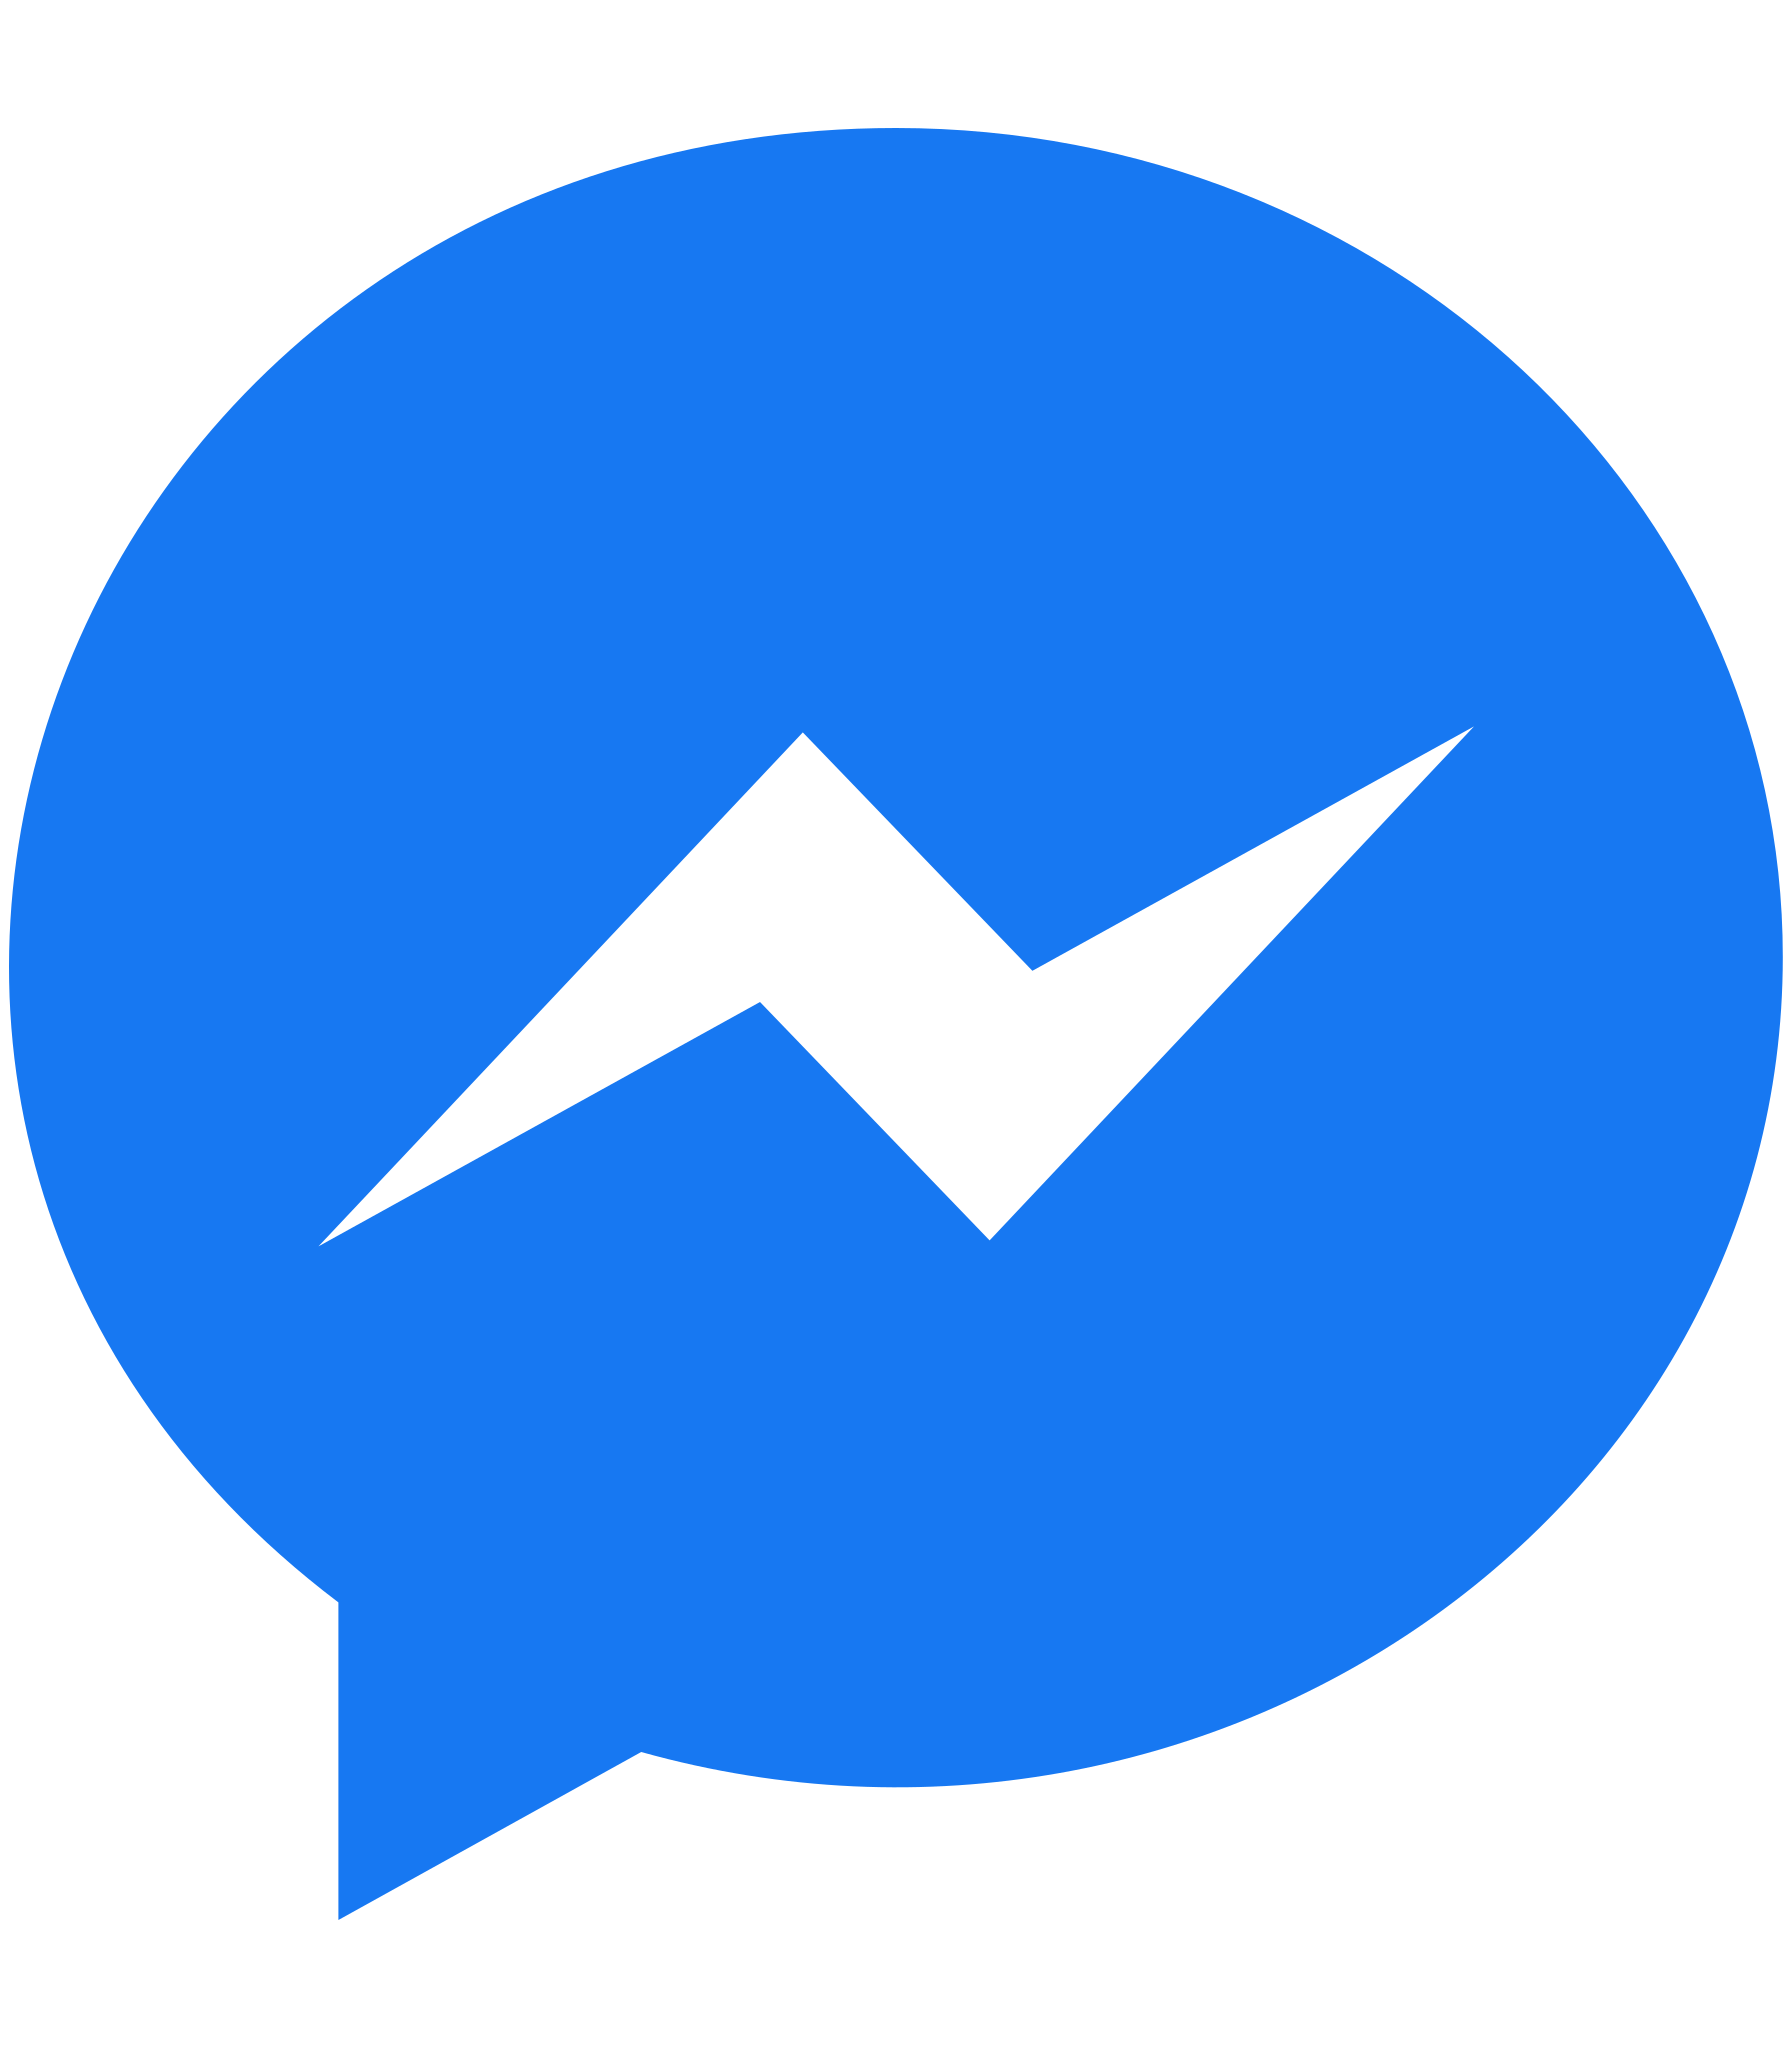 Biểu tượng Facebook Messenger của Font Awesome 5 là sự lựa chọn hàng đầu cho các nhà thiết kế web. Với nhiều biểu tượng mới và độc đáo được cập nhật thường xuyên, Font Awesome giúp bạn tạo ra trang web chuyên nghiệp và thú vị. Hãy tận dụng biểu tượng Facebook Messenger của Font Awesome 5 để thu hút khách truy cập và tăng cường trải nghiệm người dùng trên trang web của bạn.